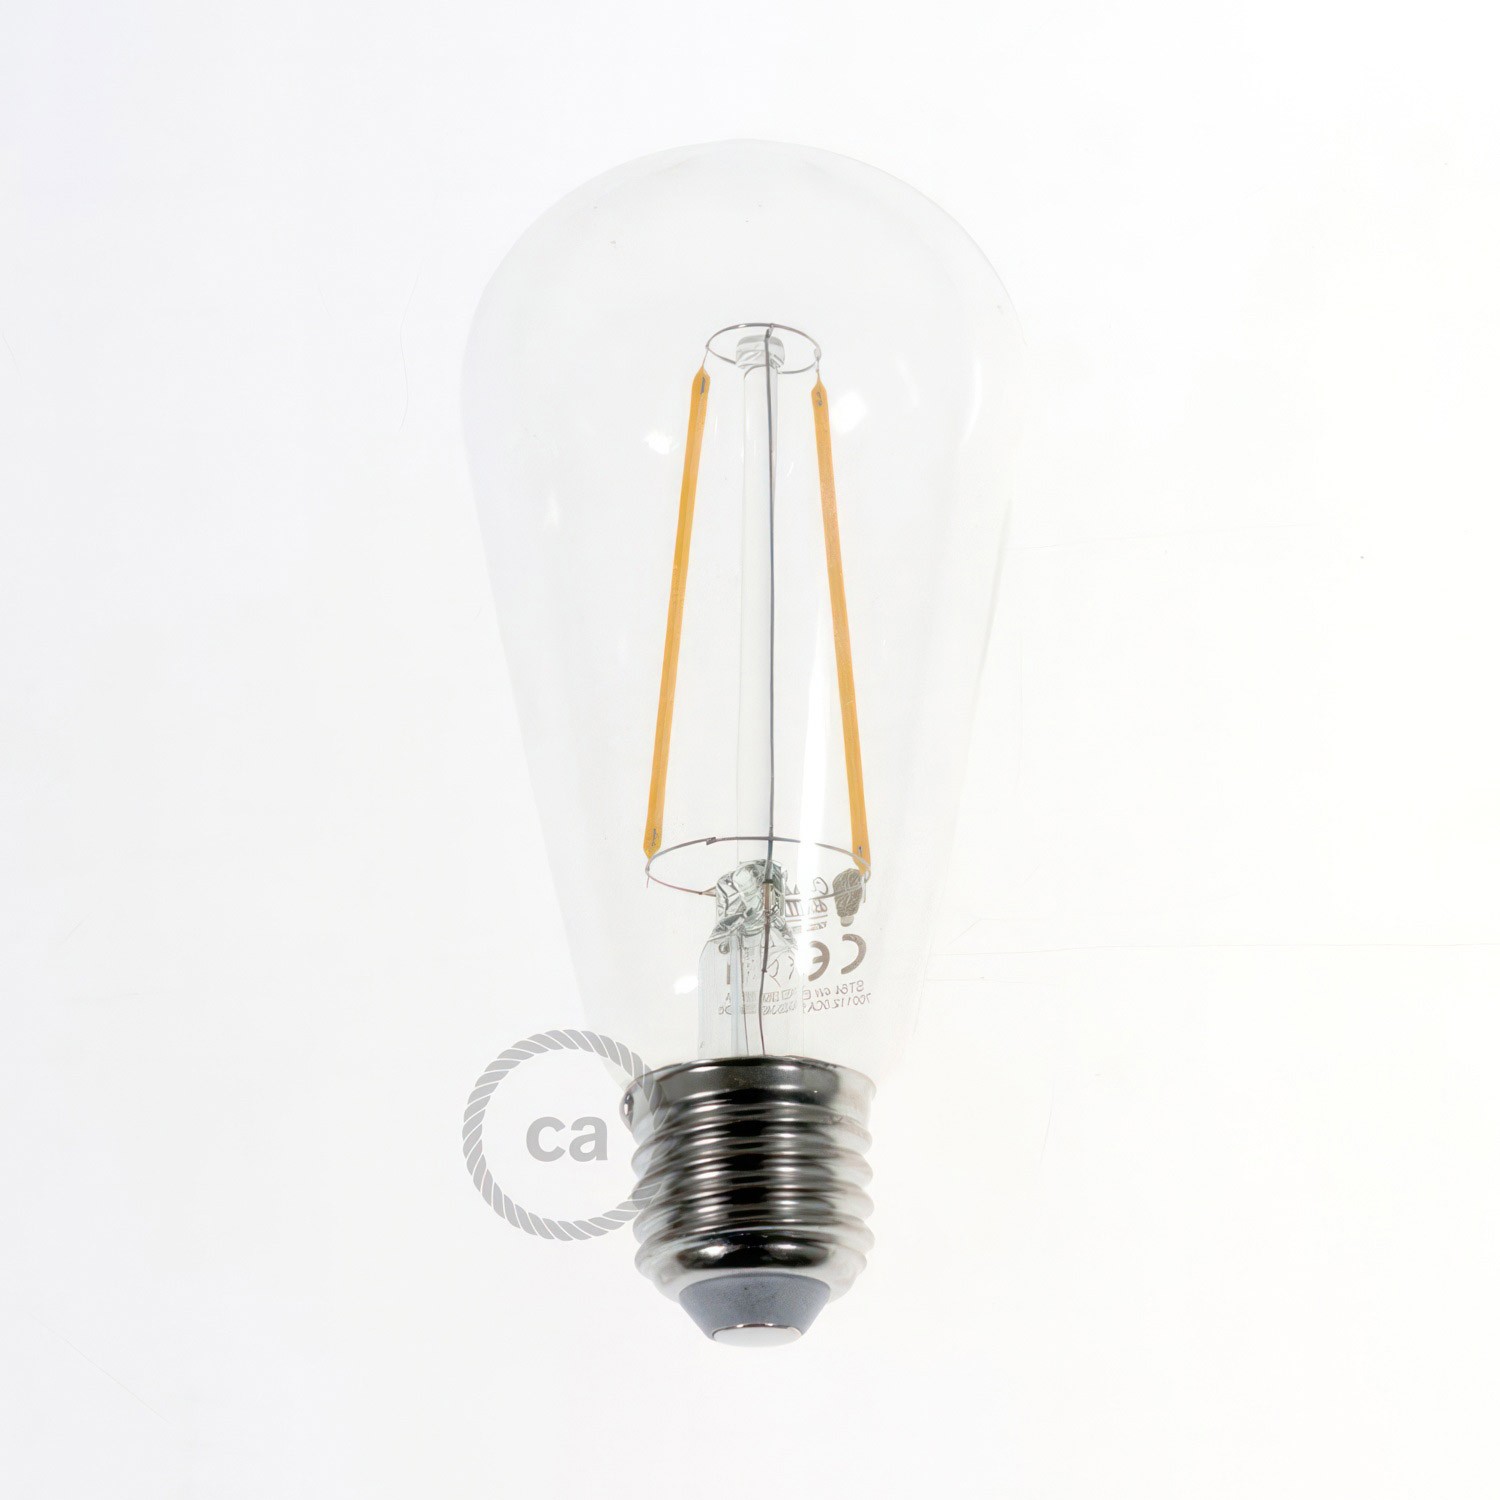 Flex 60, flexibilné nástenné alebo stropné svietidlo poskytuje rozptýlené svetlo s LED žiarovkou ST64